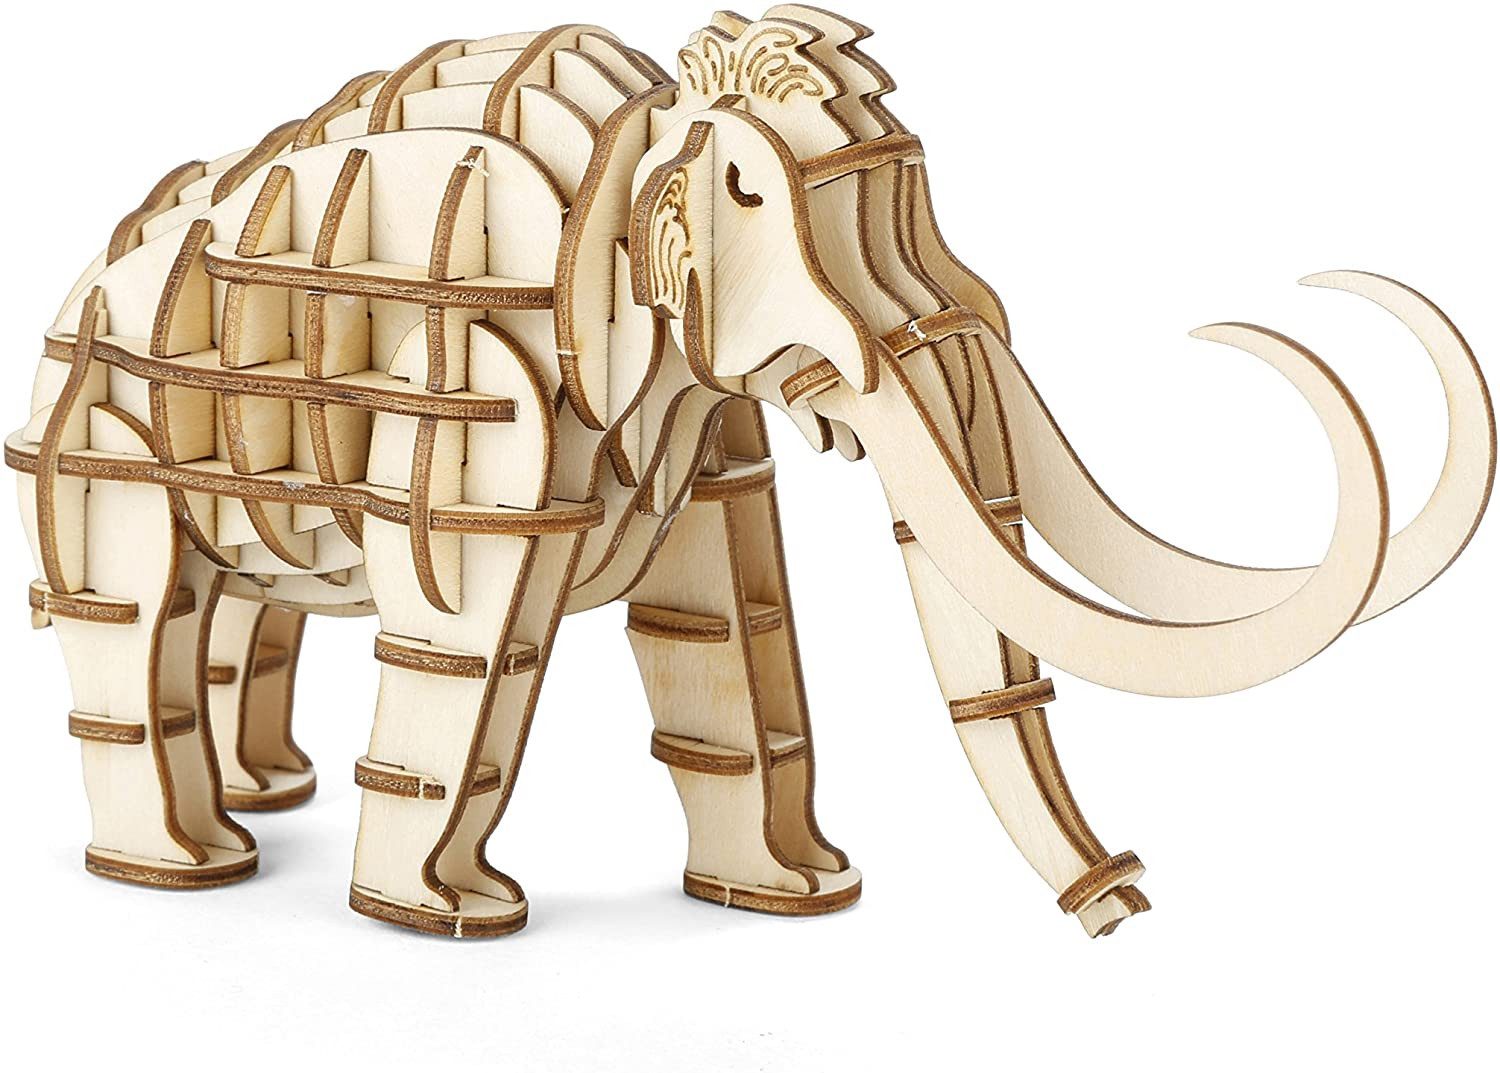 WestCraft 3D-Puzzle geschicktes 3D Holz Tier Puzzle für Klein & Groß Klebepuzzle Mammuth, 50 Puzzleteile, viele Teile, Spaß mit Dinosaurier Mammuth Gorilla Seepferdchen & Co